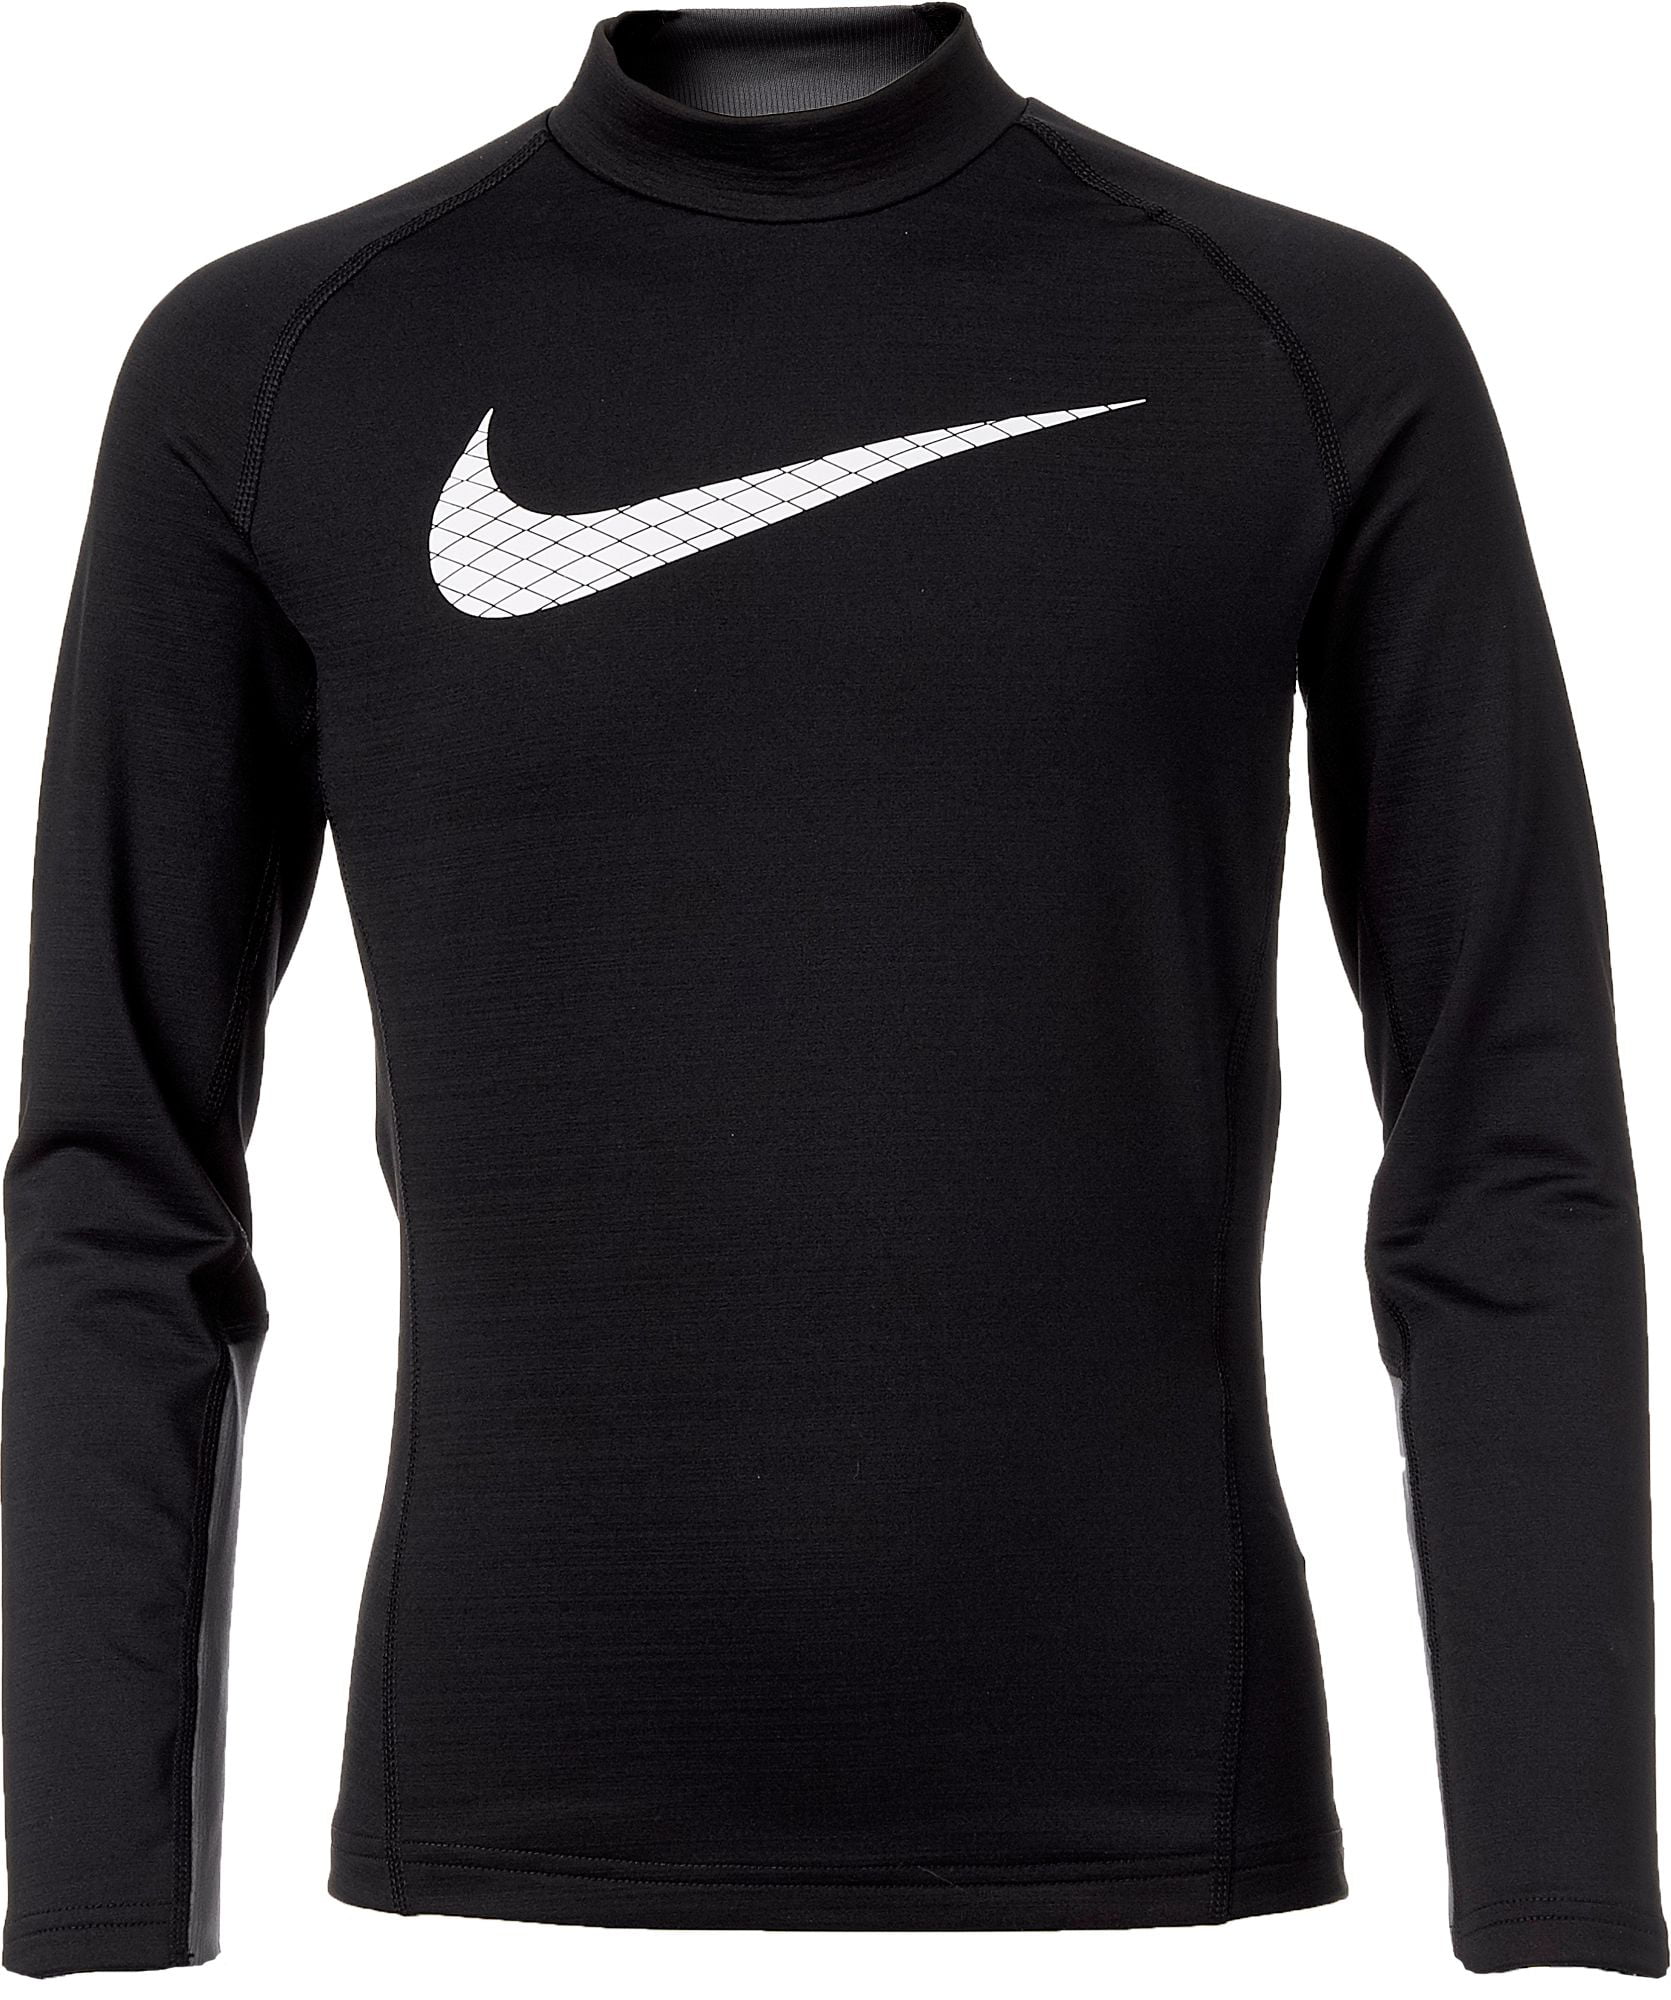 Nike Boys' Dri-FIT Mock Neck Compression Shirt - Walmart.com - Walmart.com